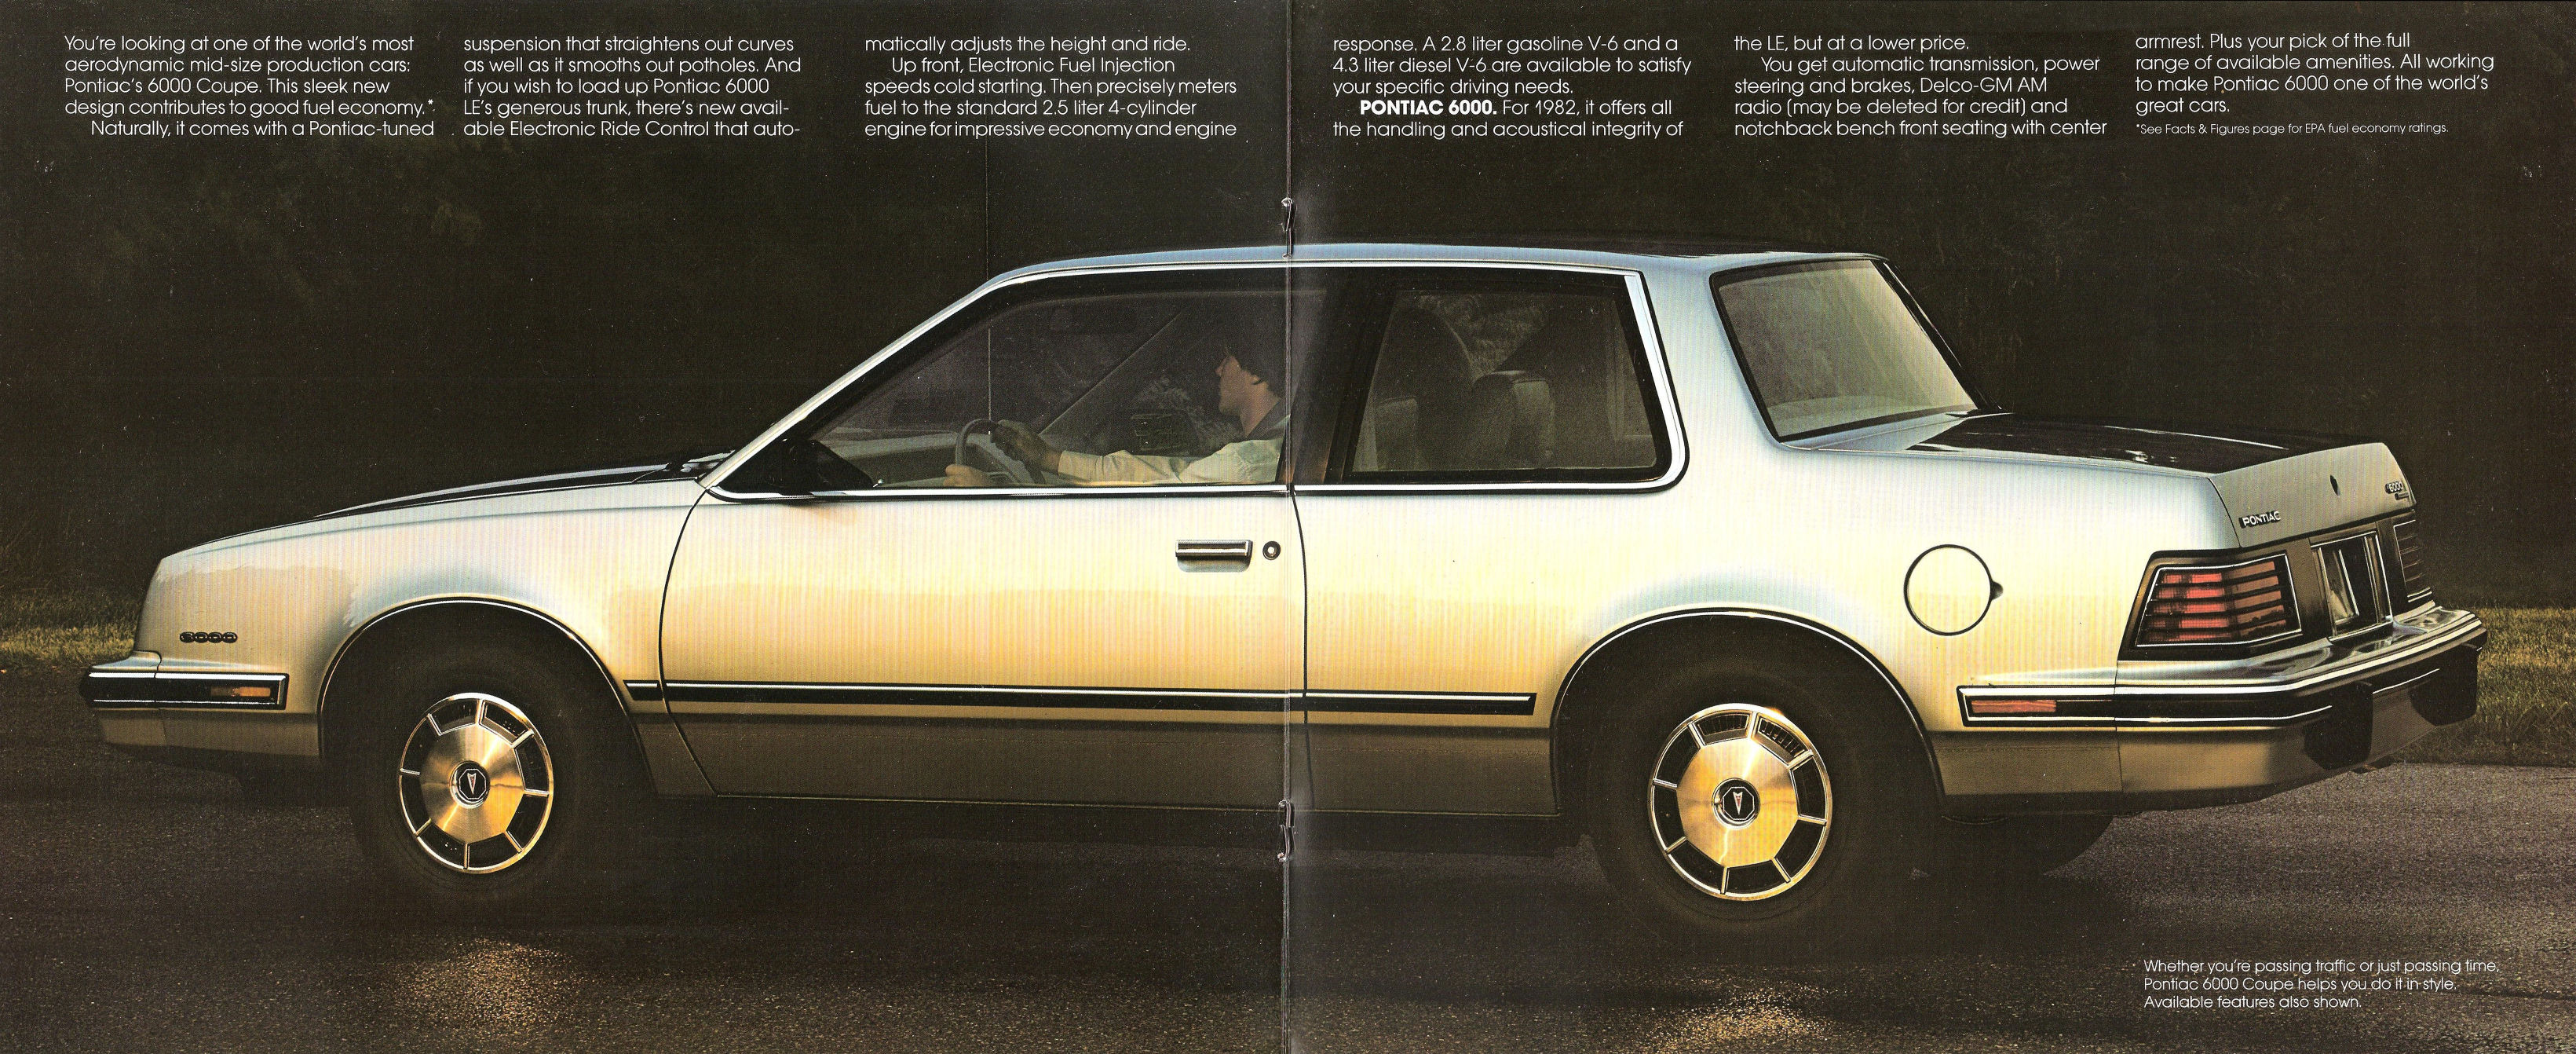 1982_Pontiac_6000-06-07